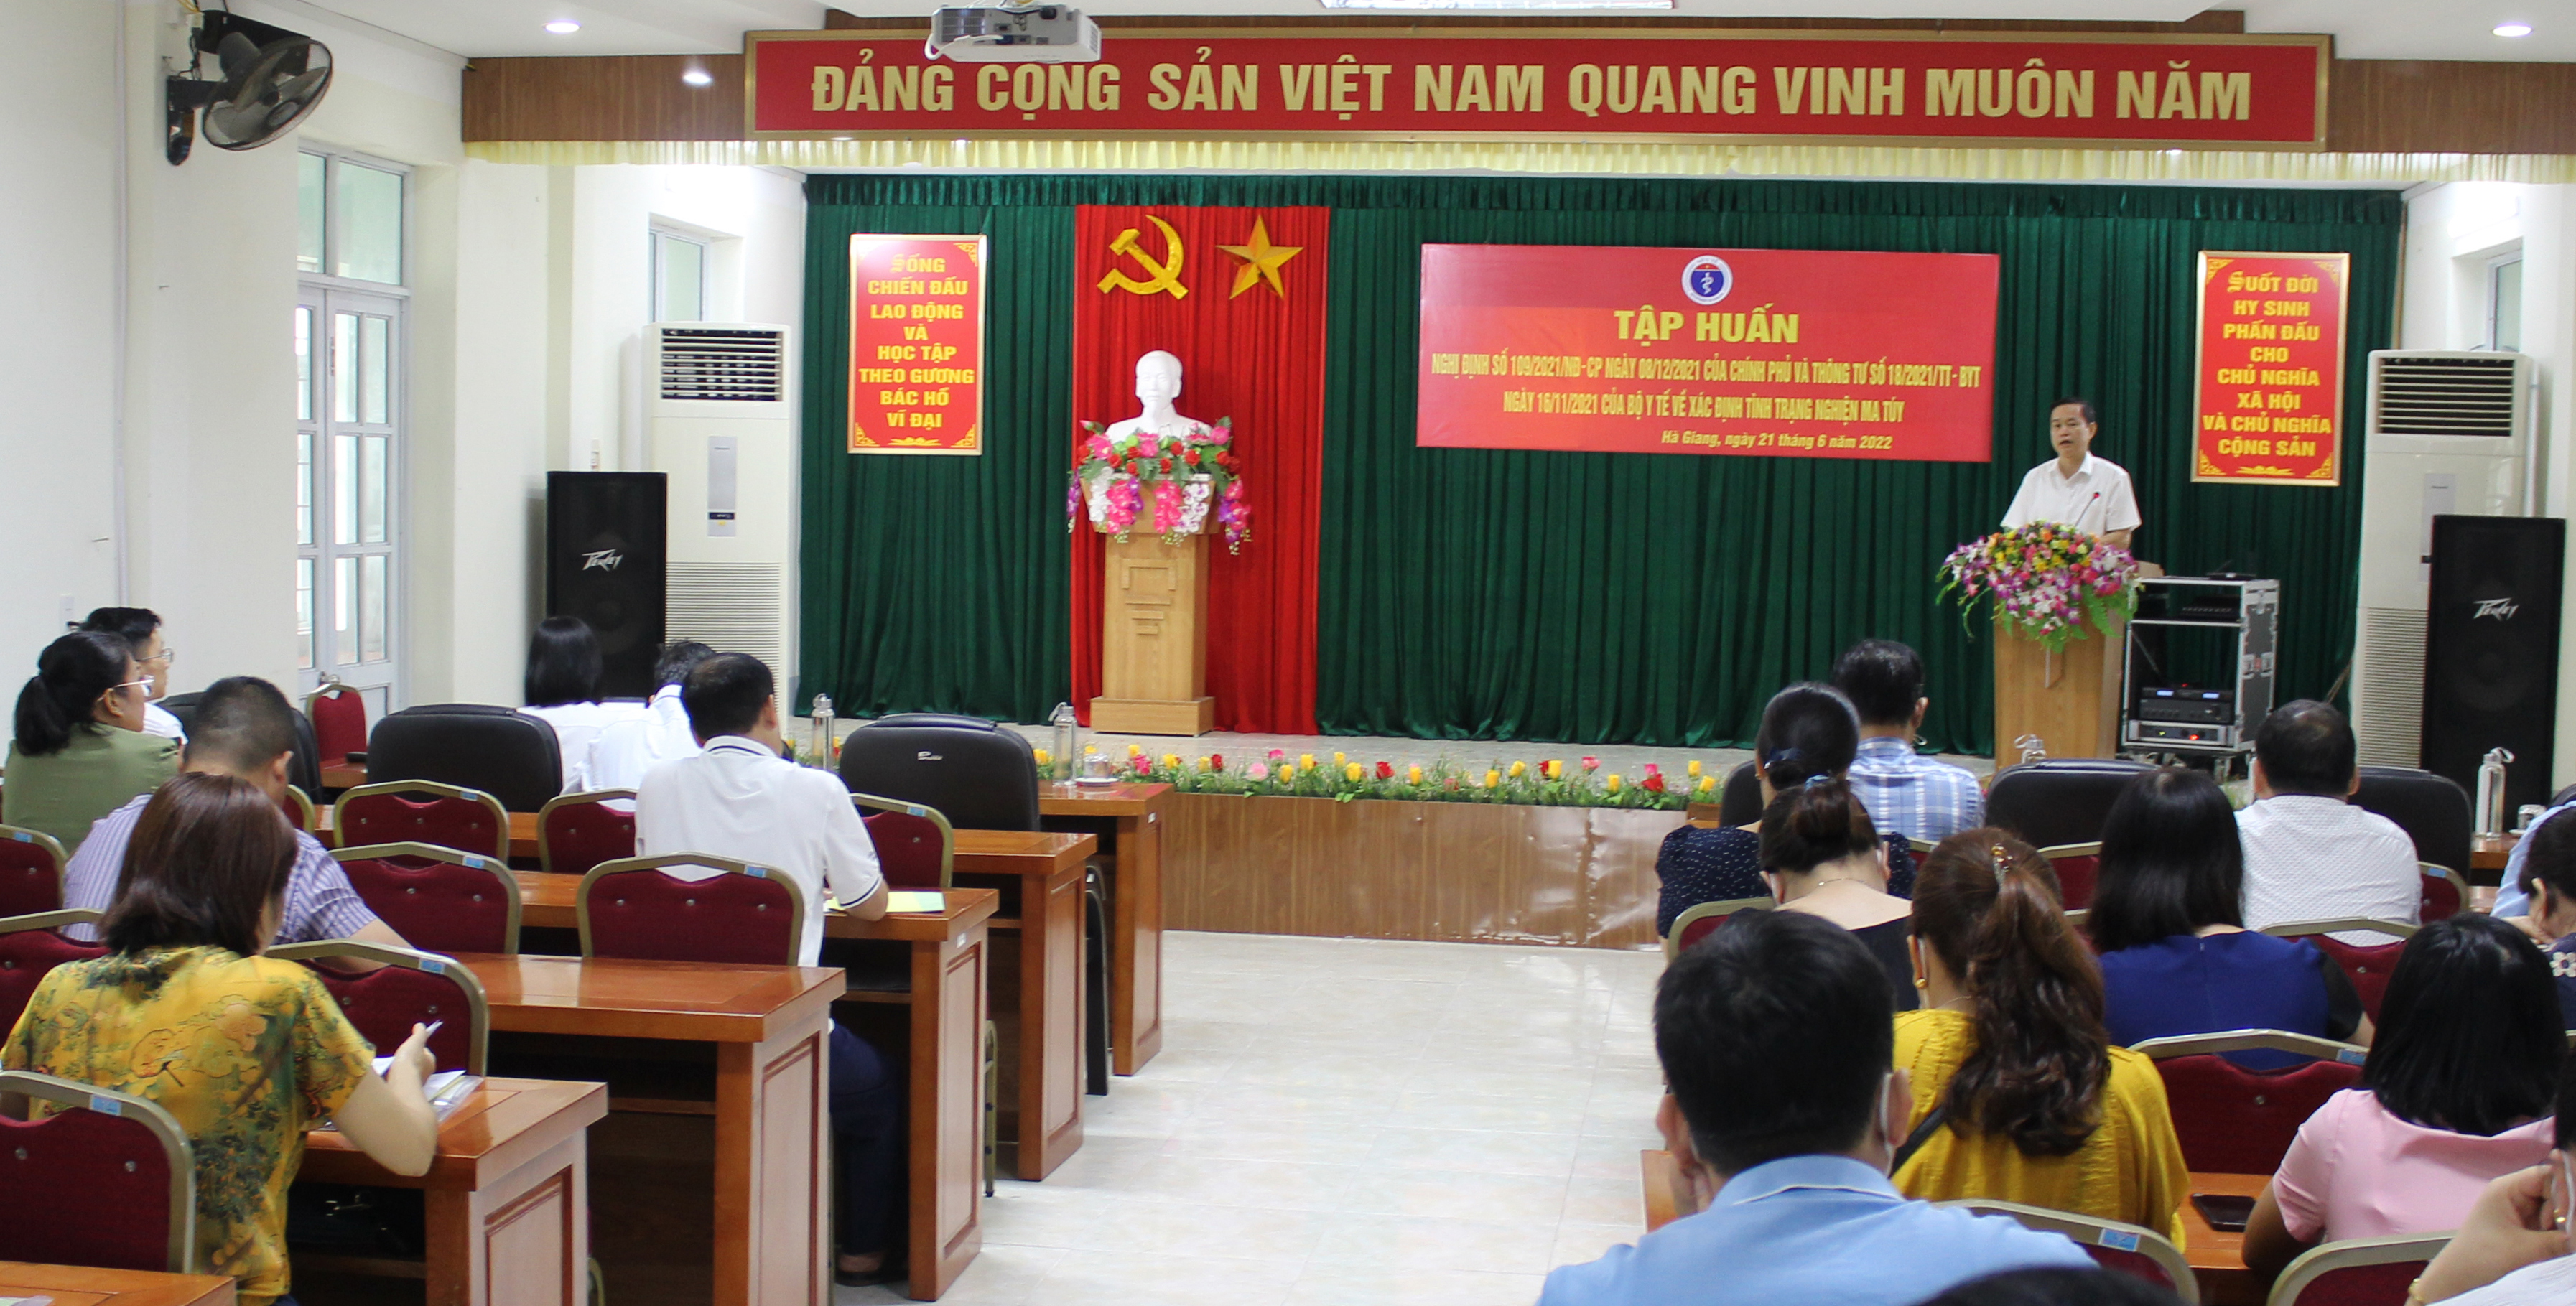 Đồng chí Nguyễn Đình Dích, Phó Giám đốc Sở Y tế phát biểu tại lớp tập huấn.